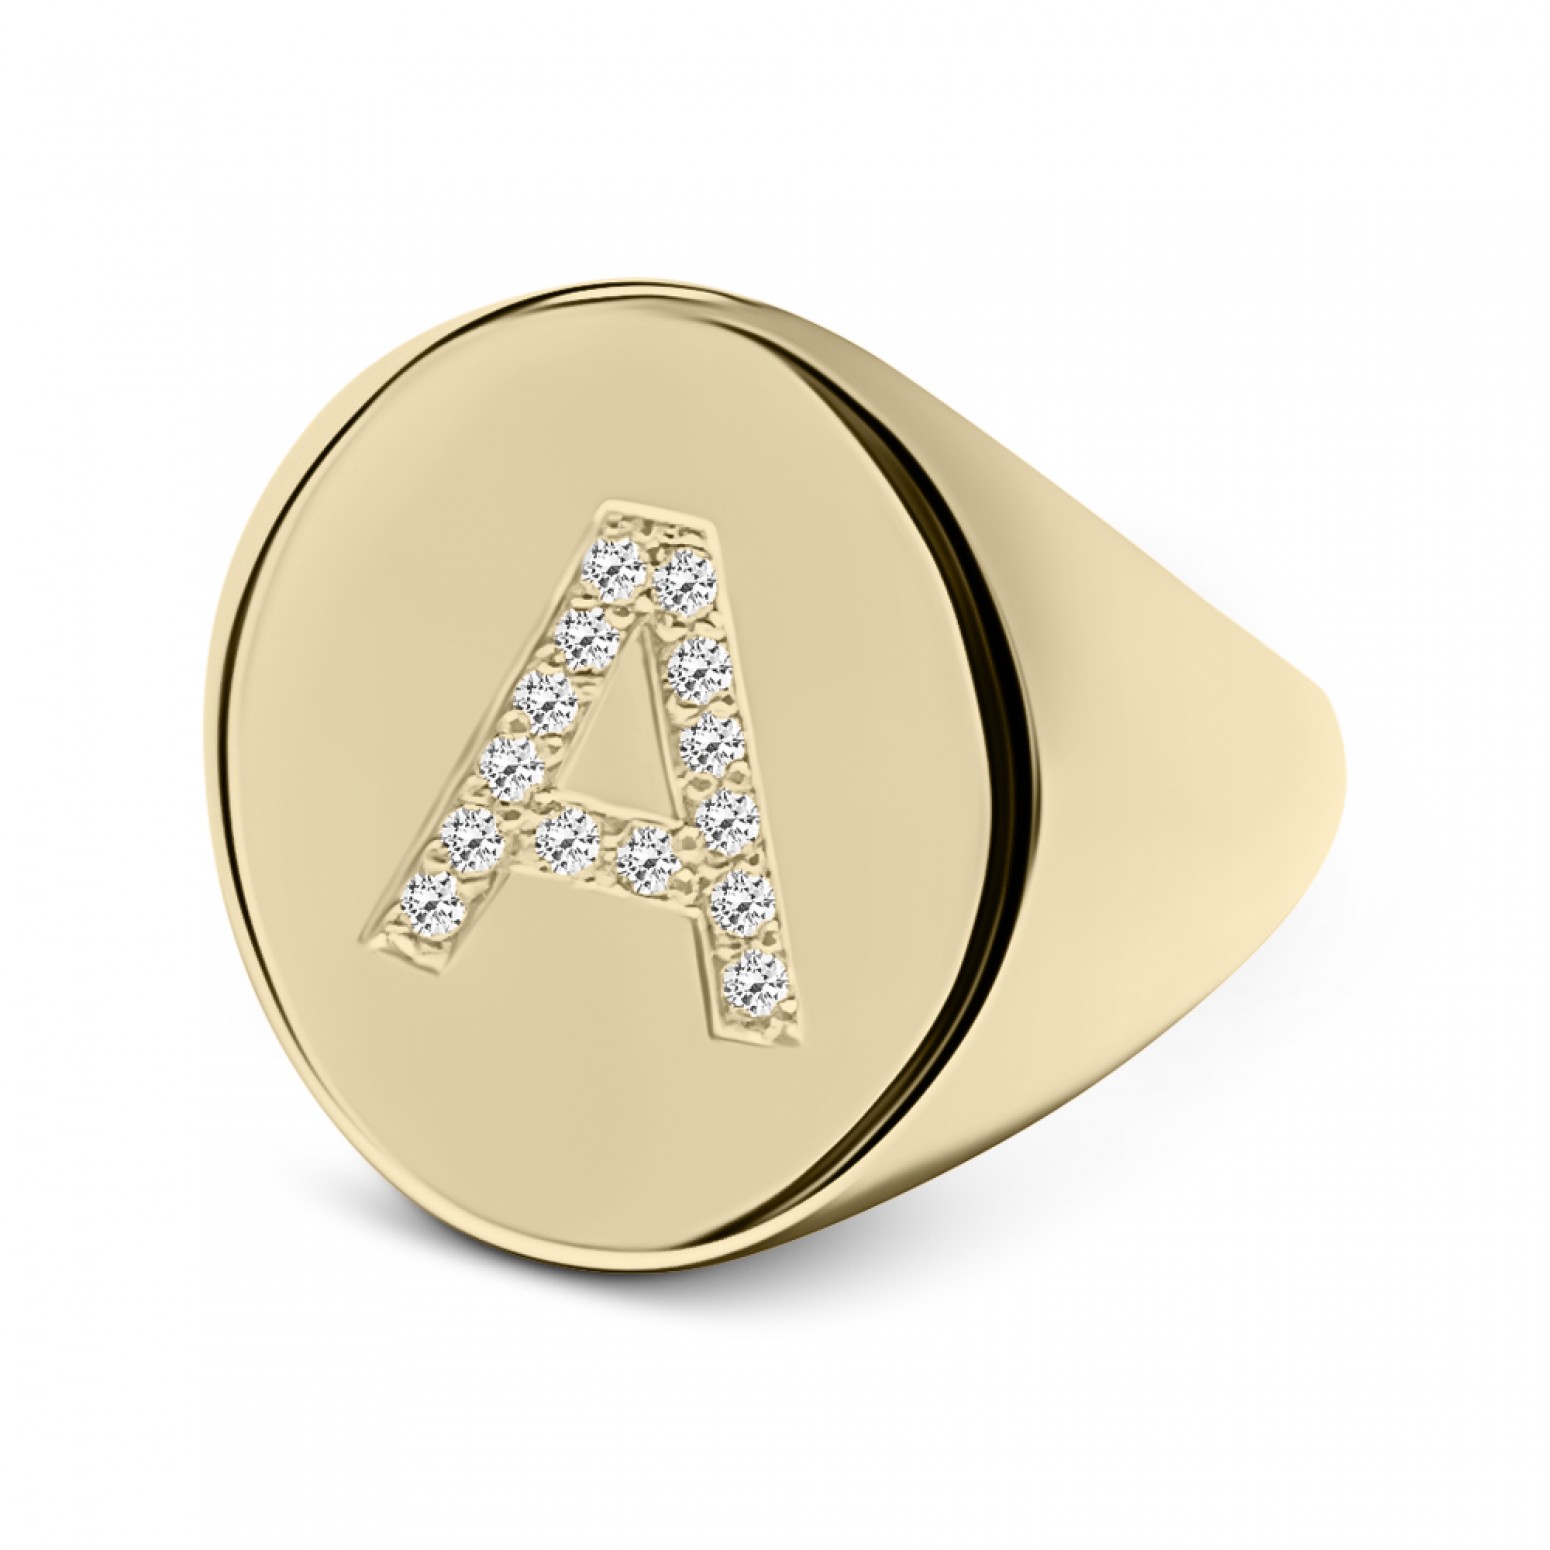 Δαχτυλίδι με μονόγραμμα Α, Κ9 χρυσό με ζιργκόν, da3565 ΔΑΧΤΥΛΙΔΙΑ Κοσμηματα - chrilia.gr